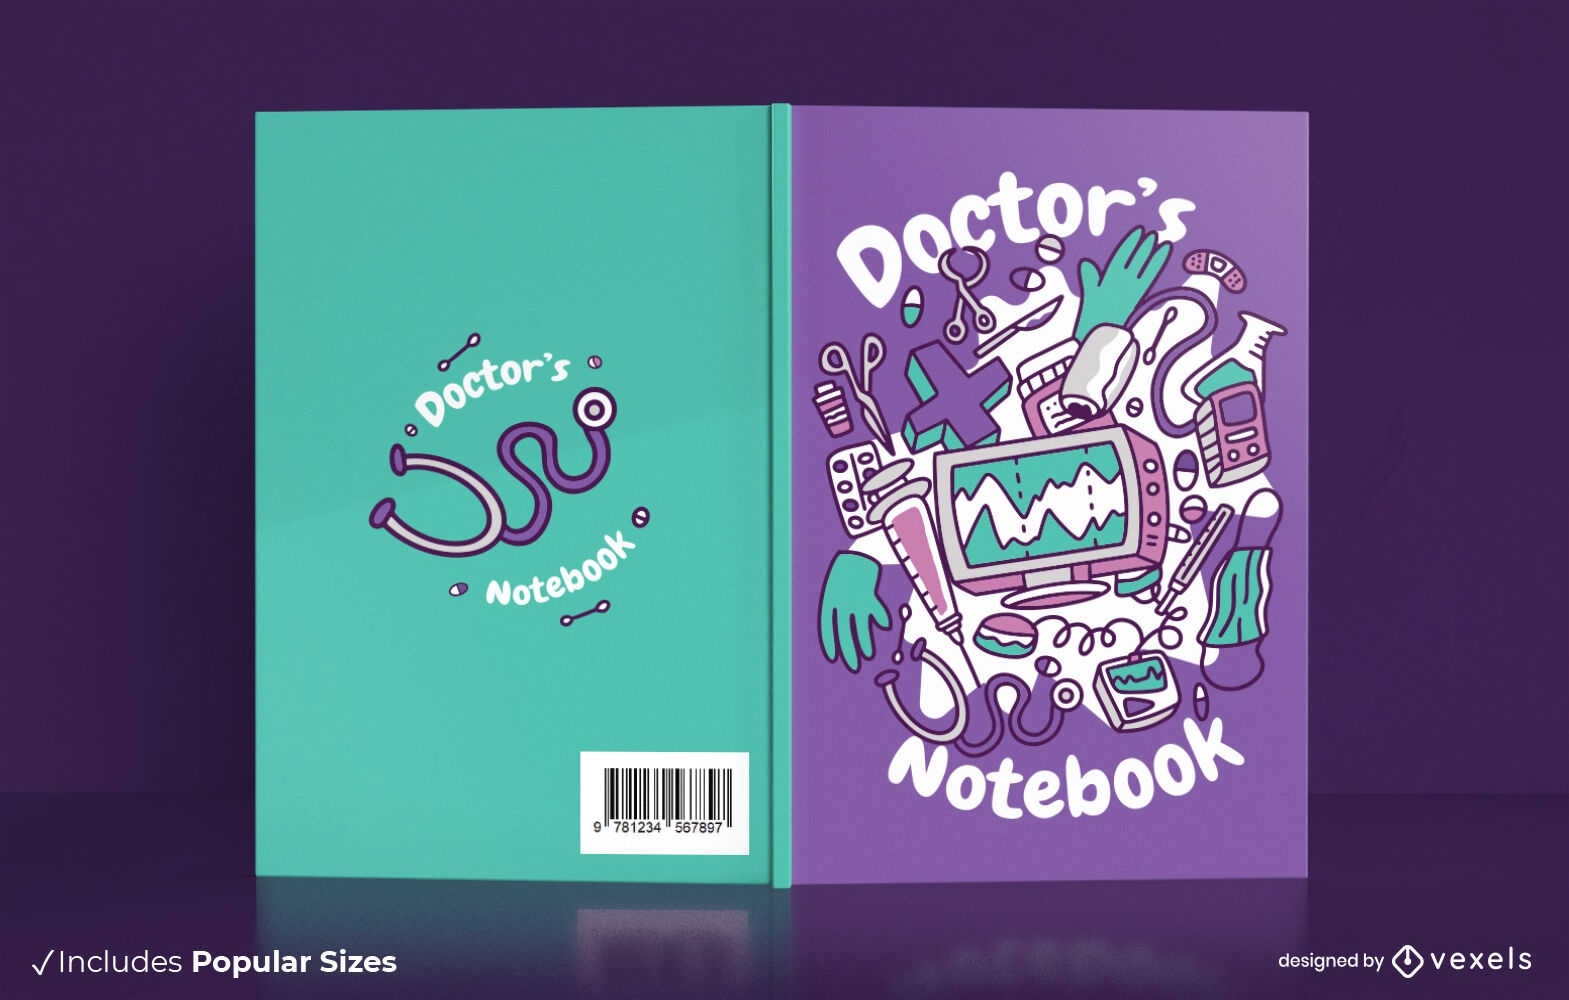 Diseño de portada de libro de cuaderno de doctor